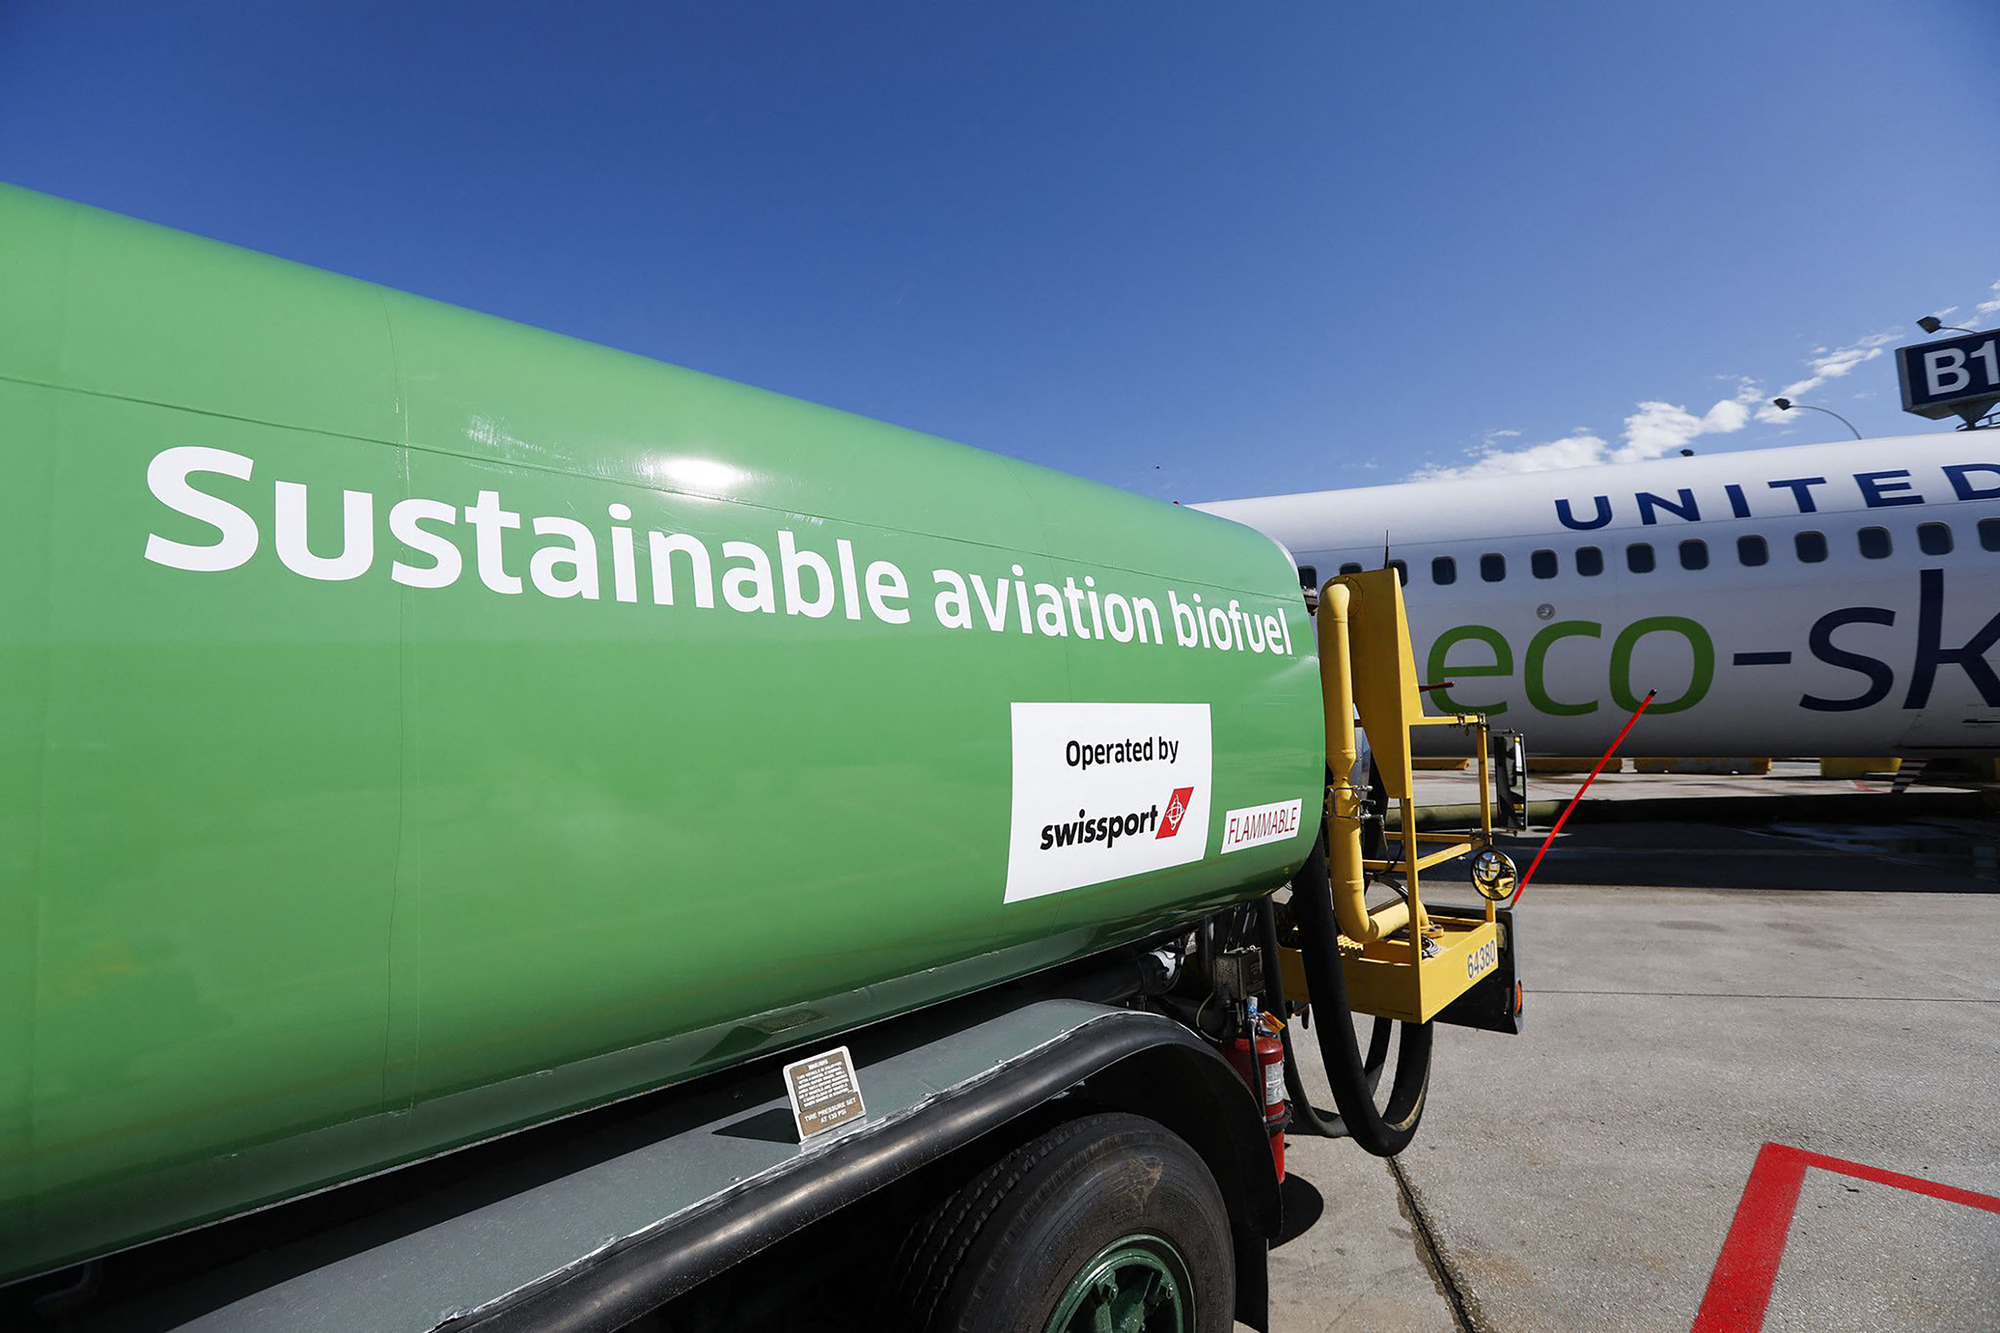 Transport aérien : des innovations vertes mal connues et peu acceptées